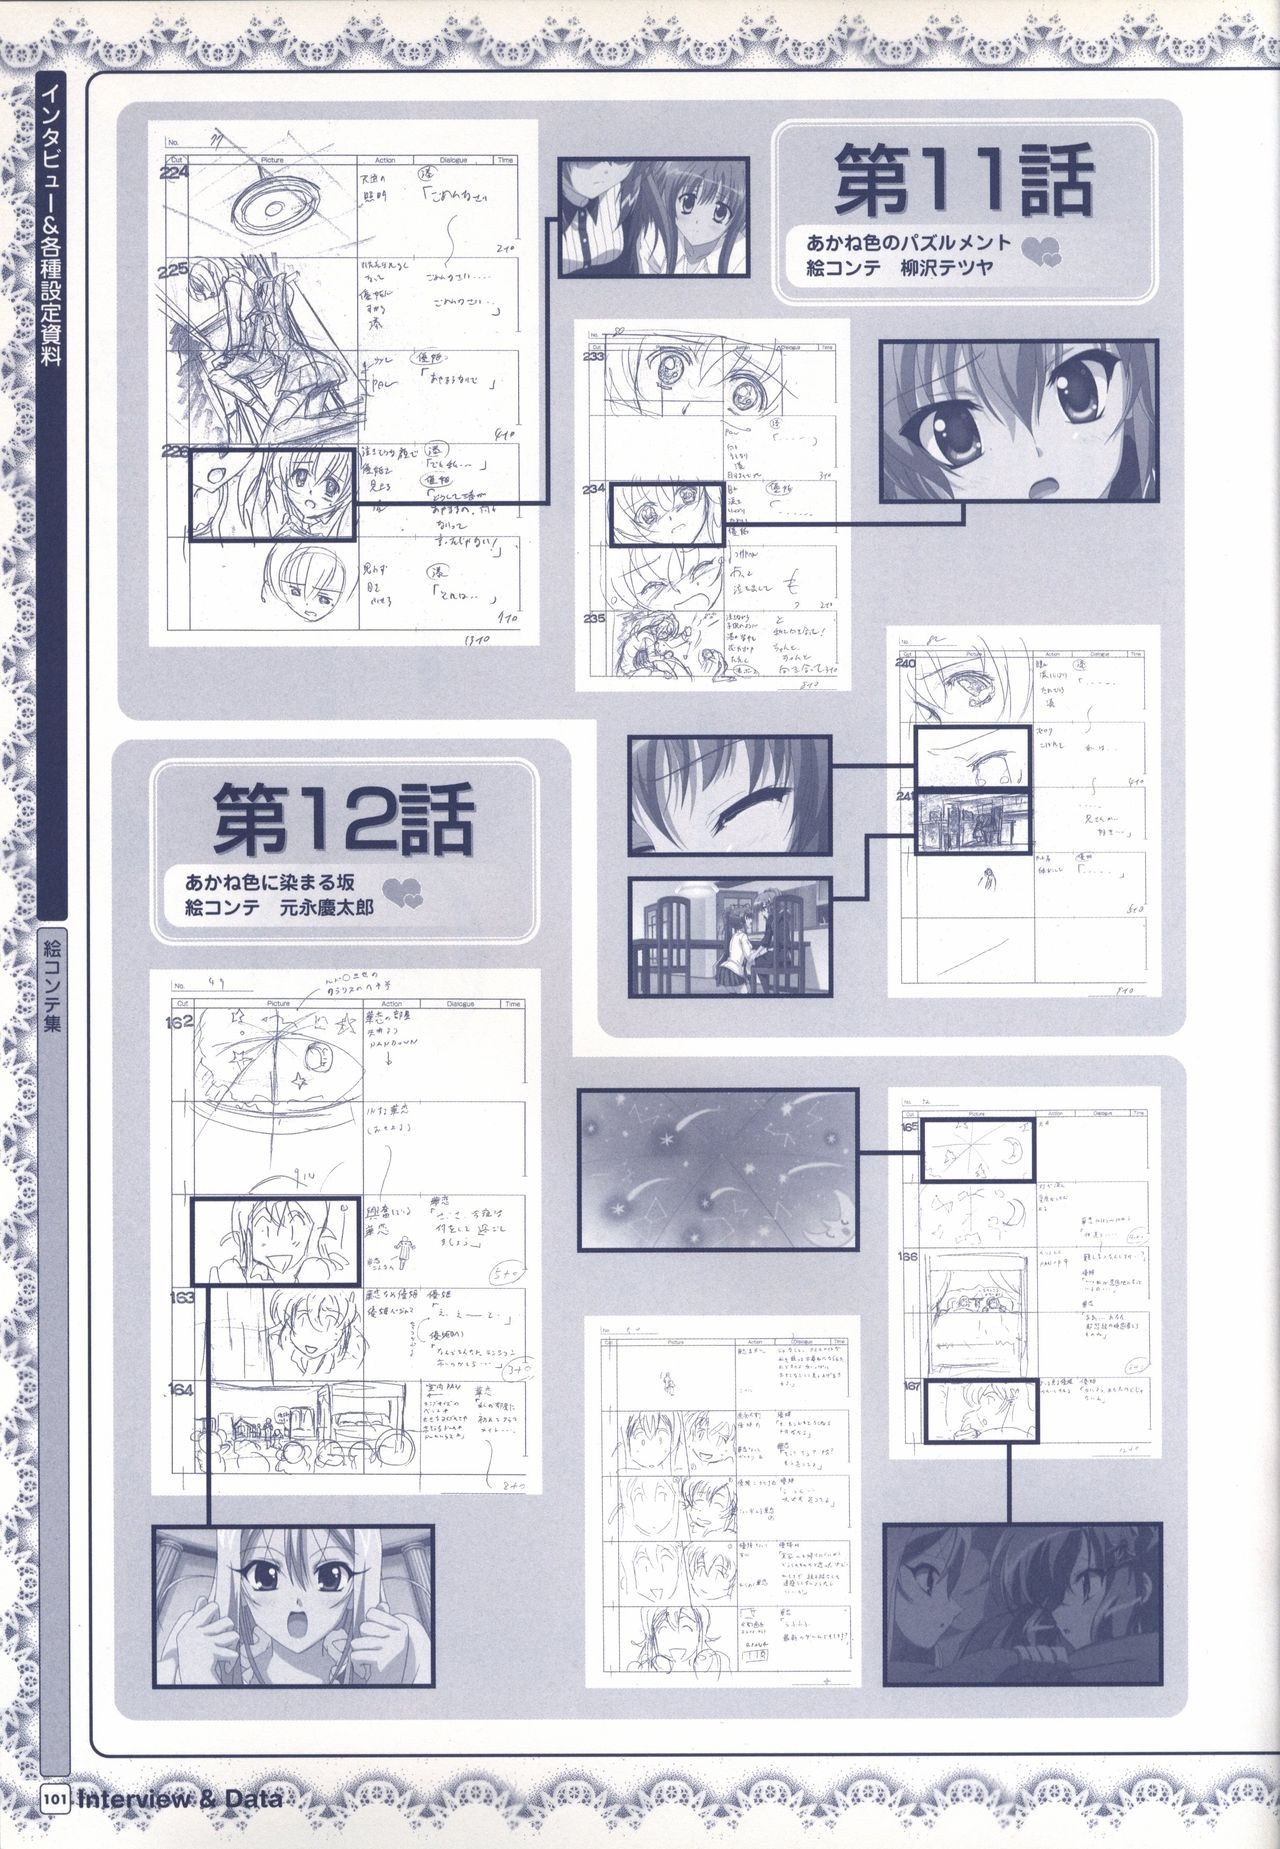 TV ANIME Akaneiro ni Somaru Saka Visual Guide Book 101